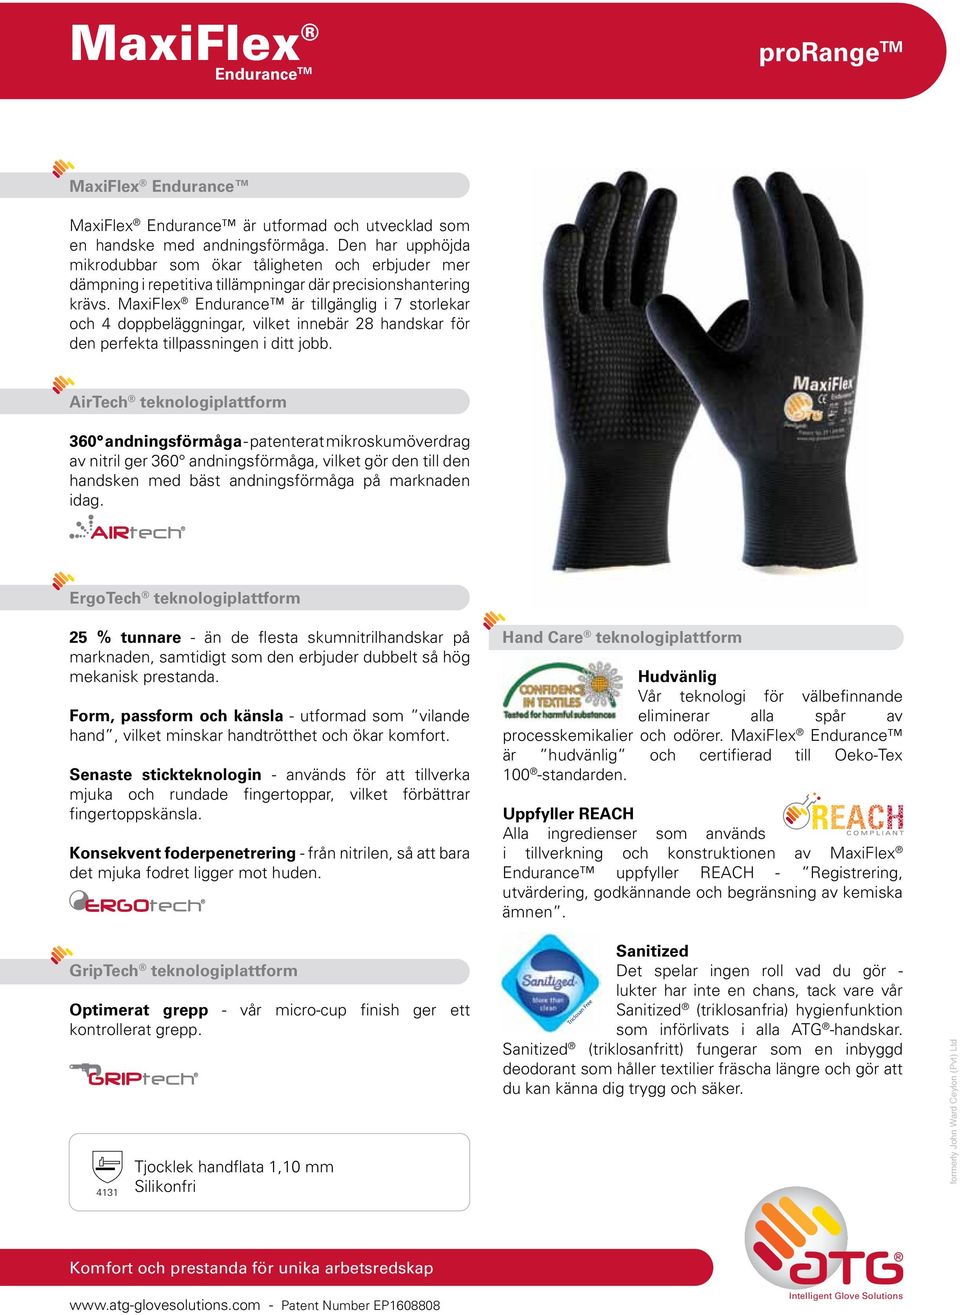 MaxiFlex Endurance är tillgänglig i 7 storlekar och 4 doppbeläggningar, vilket innebär 28 handskar för den perfekta tillpassningen i ditt jobb.